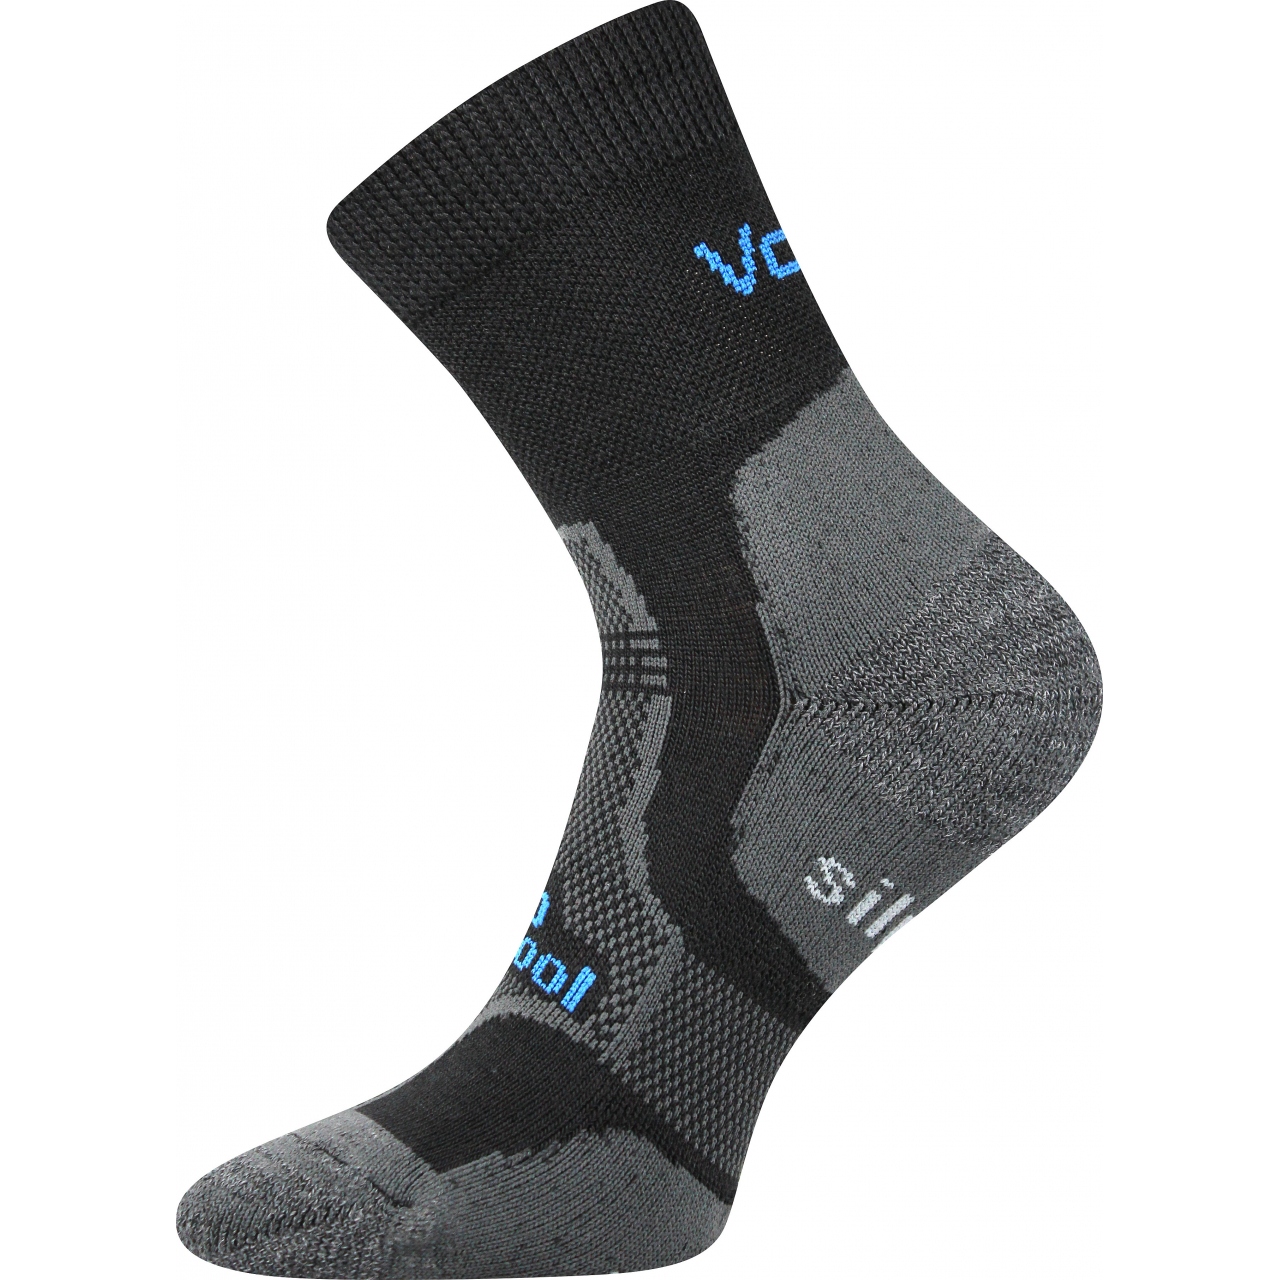 Ponožky unisex zimní Voxx Granit - černé, 43-46